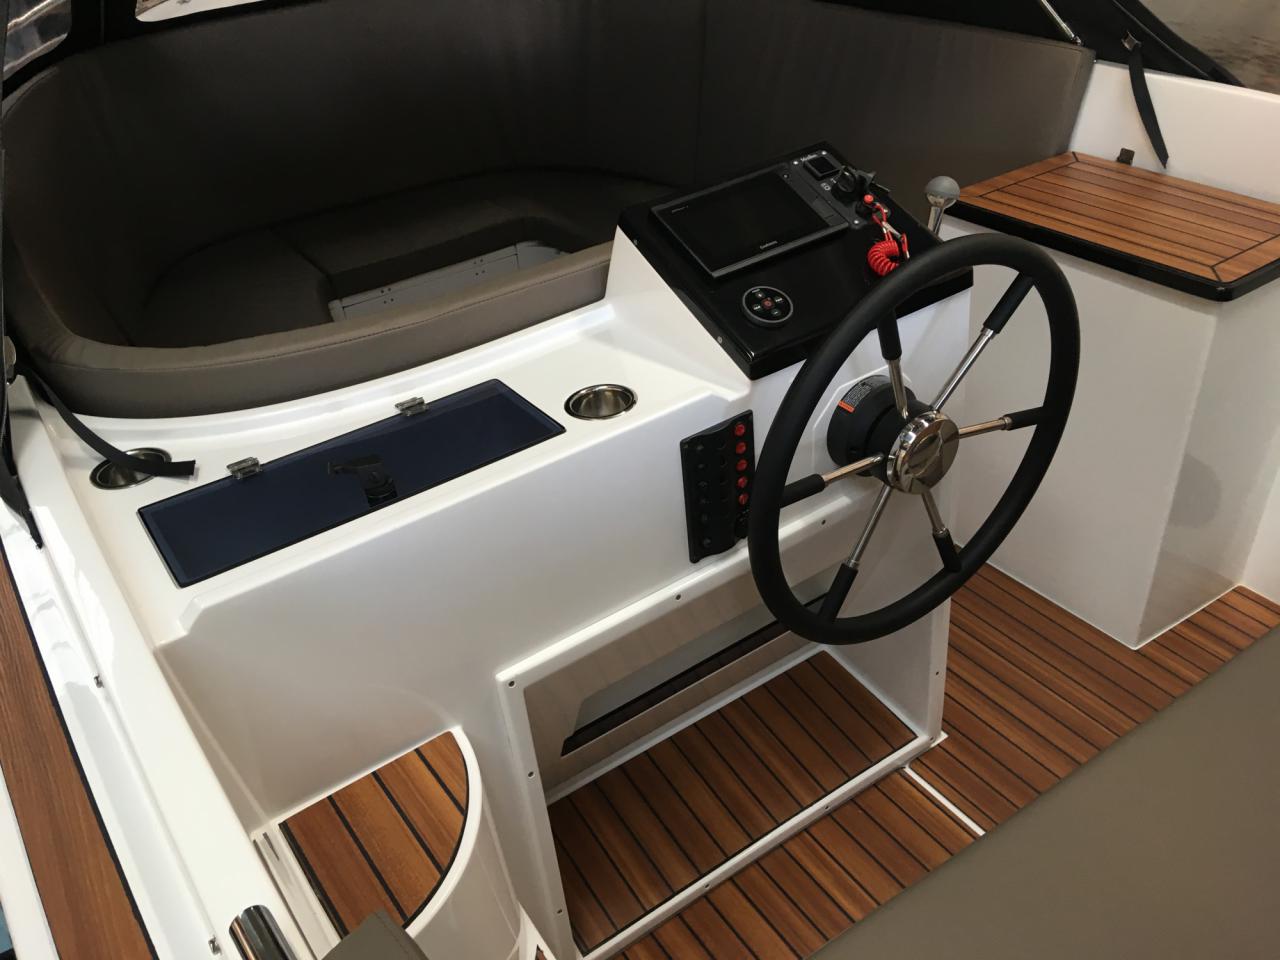 The Maxima 620 Retro - Base Boat Build from